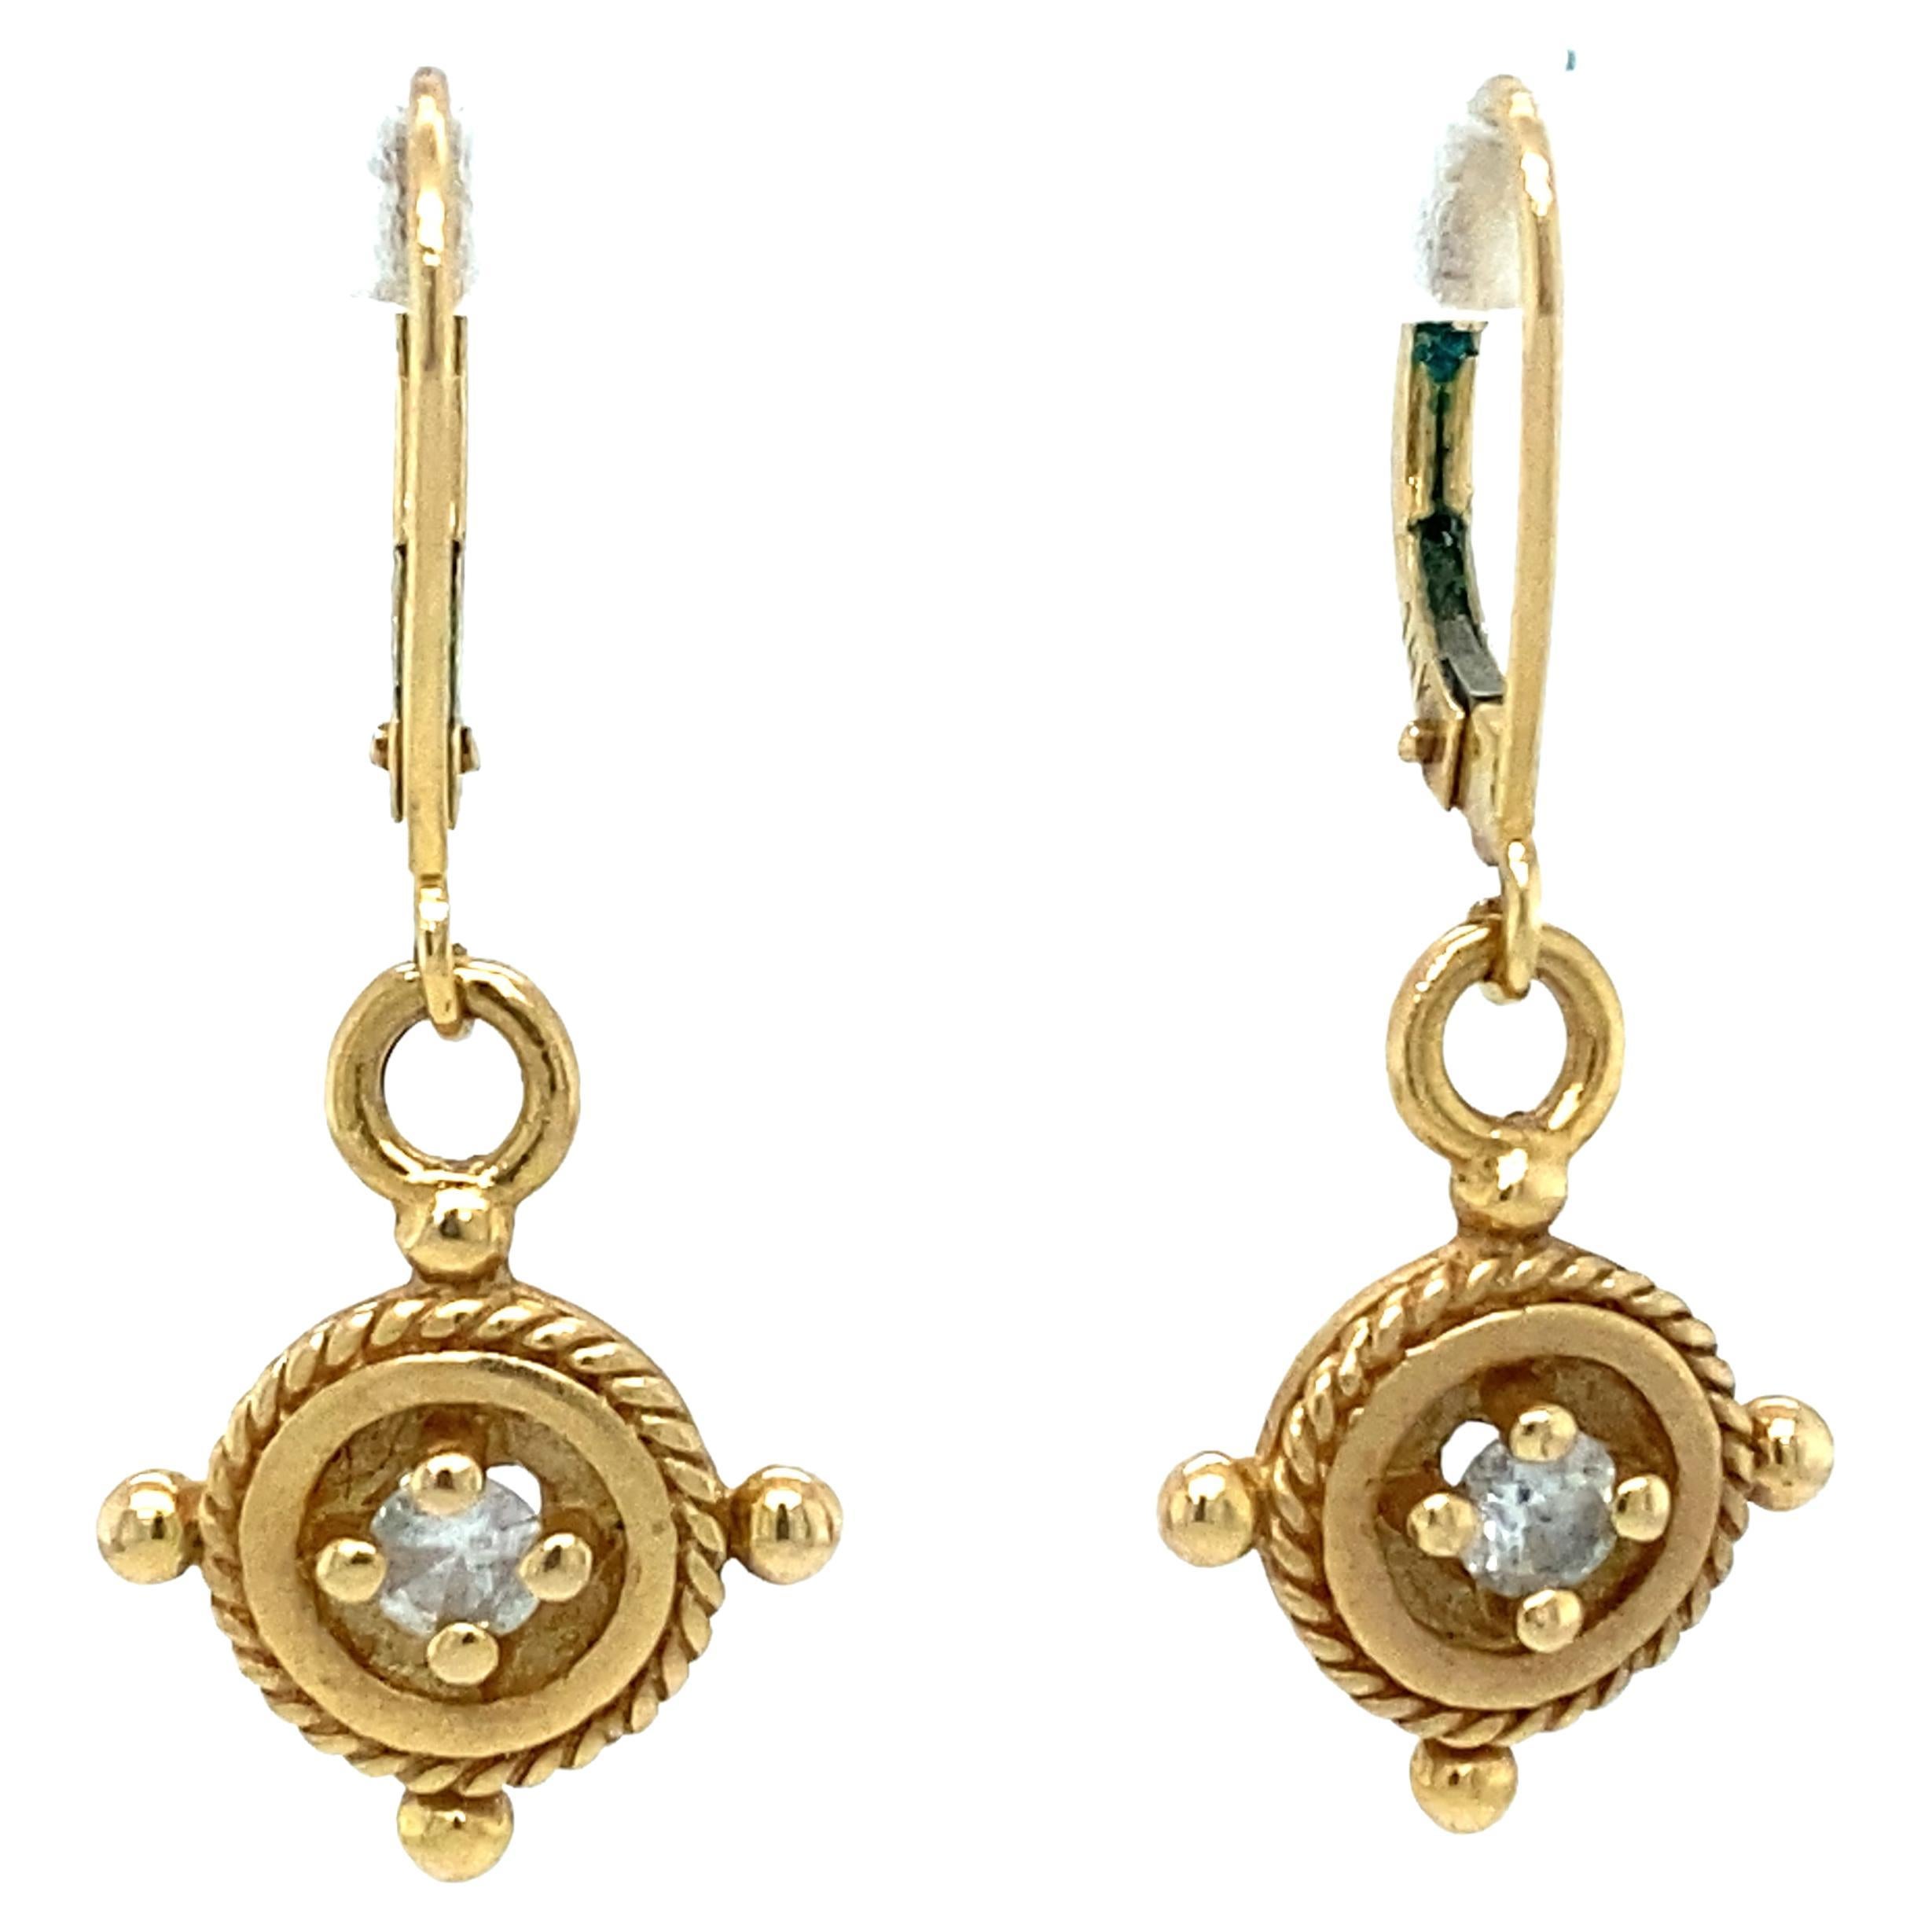 Circa 2000s Diamond Charm Dangle Earrings in 14 Karat Yellow Gold